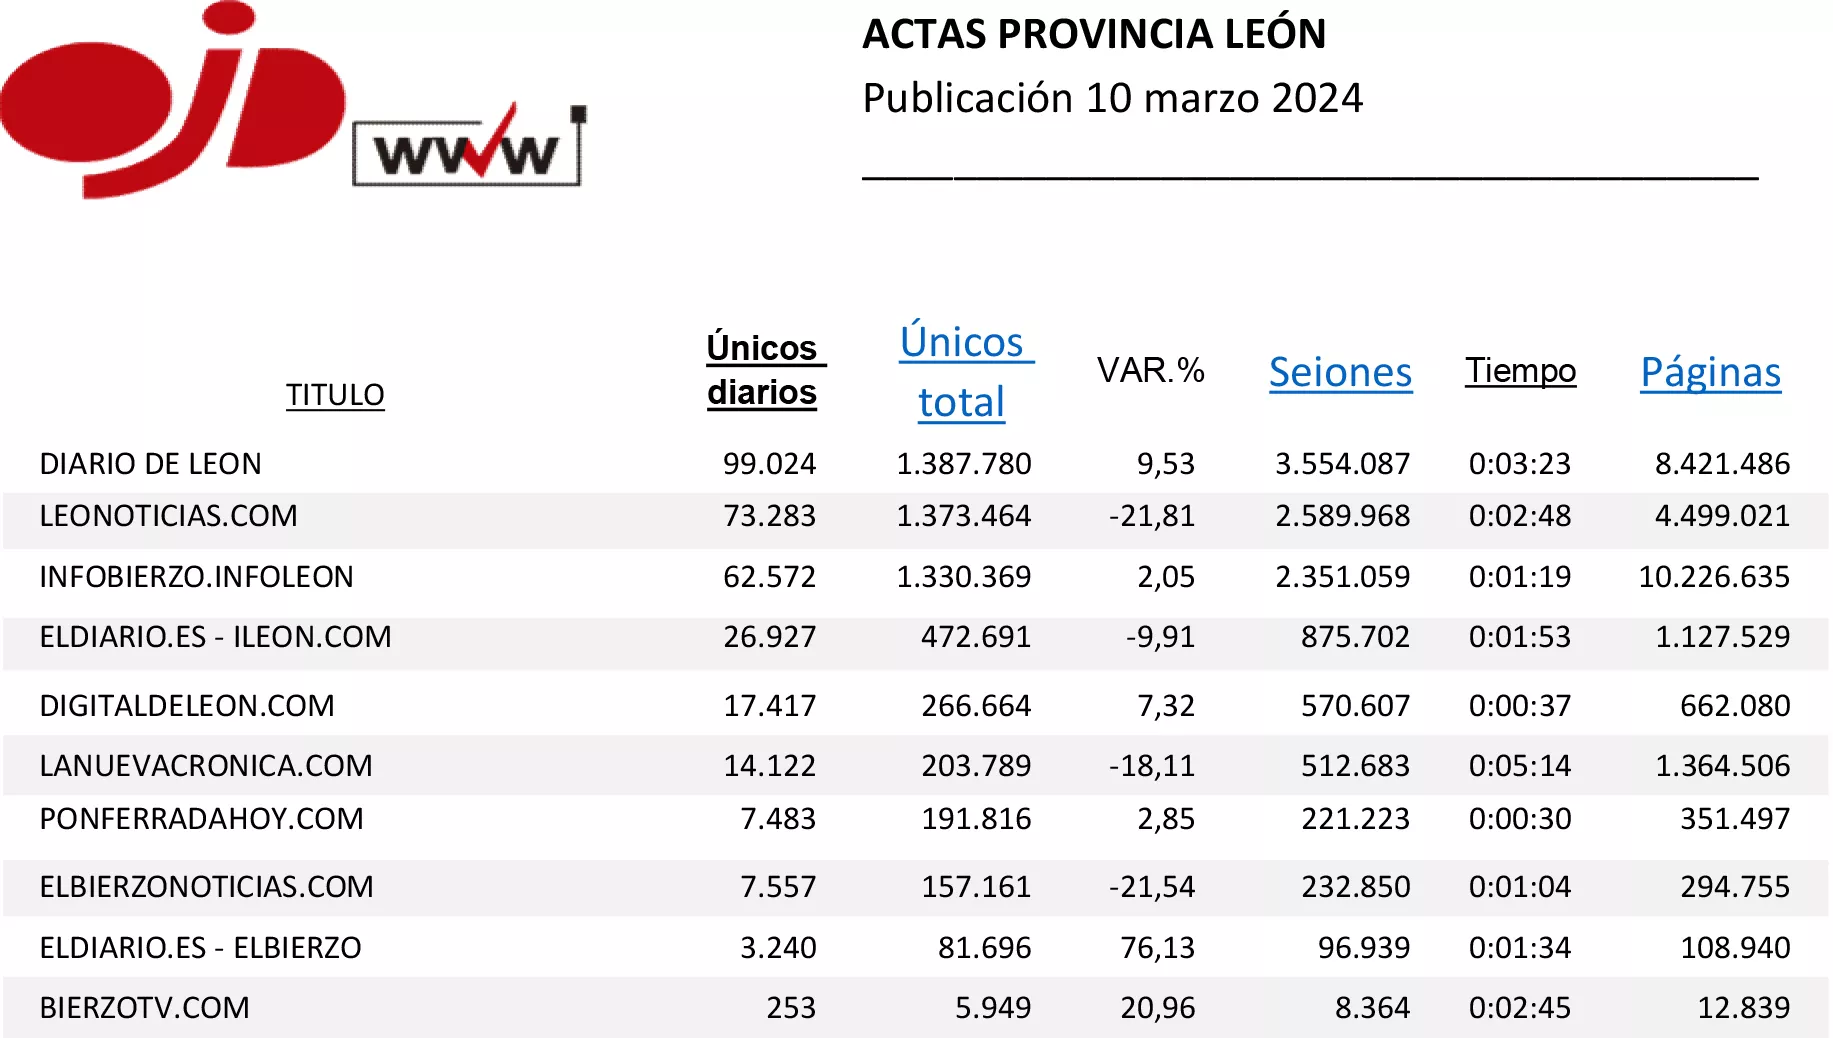 OJD acta provincia de León